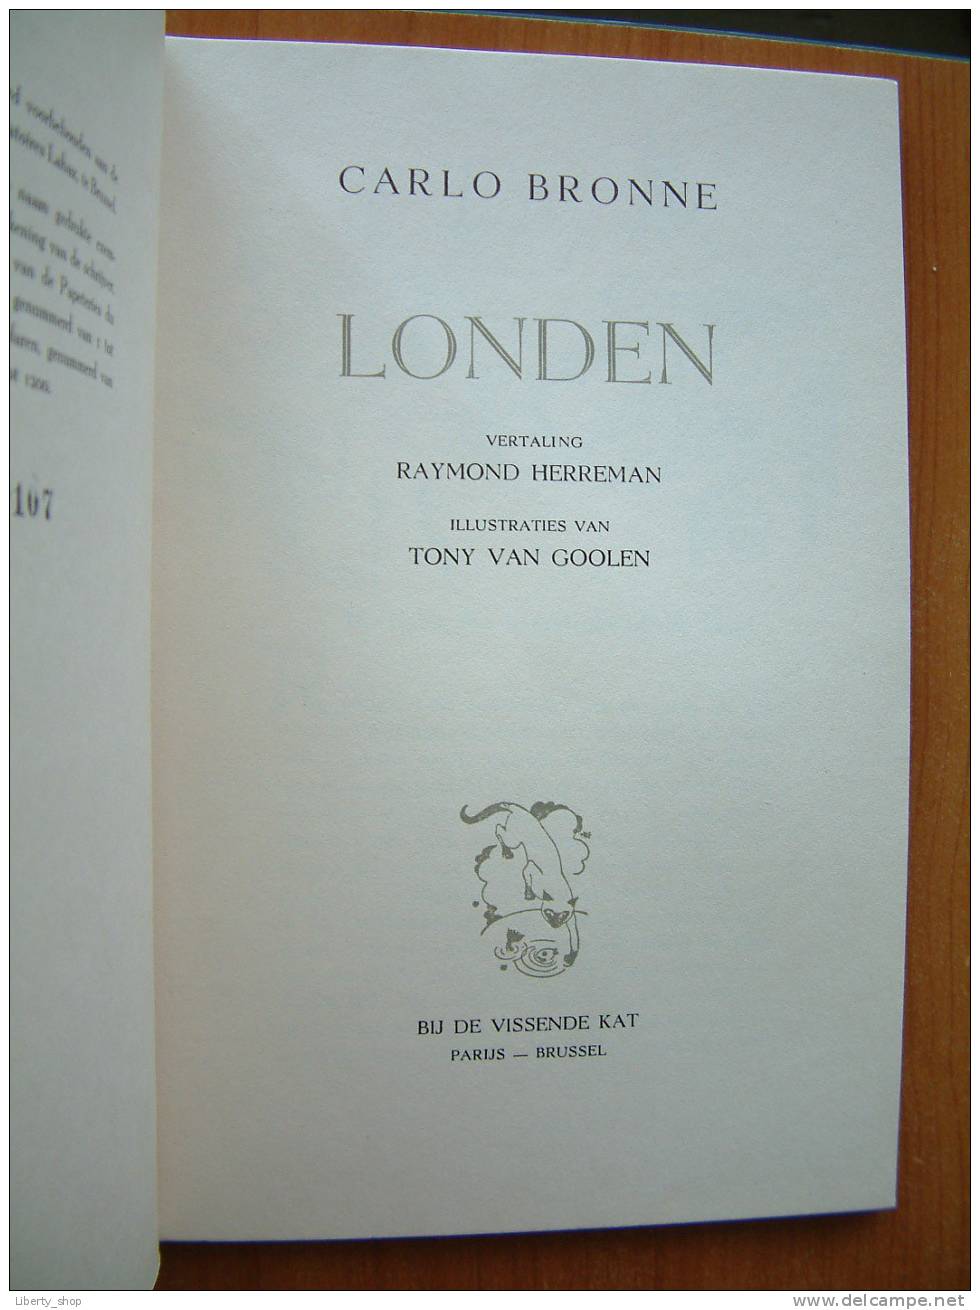 LONDEN - CARLO BRONNE / Vertaling RAYMOND HERREMAN - Illustraties Van TONY VAN GOOLEN / BIJ DE VISSENDE KAT. - Oud